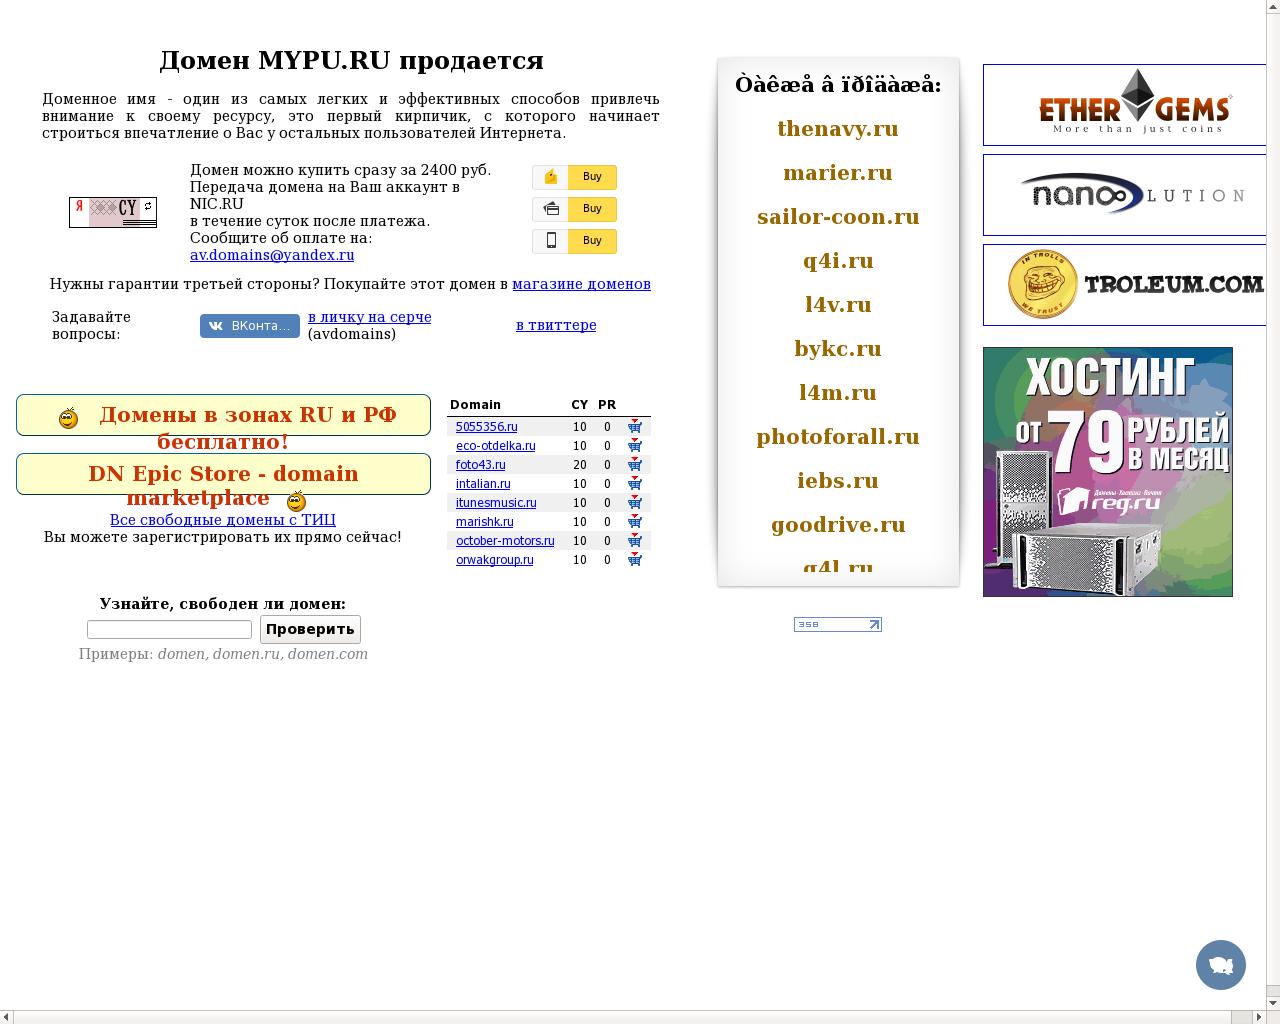 Изображение сайта mypu.ru в разрешении 1280x1024